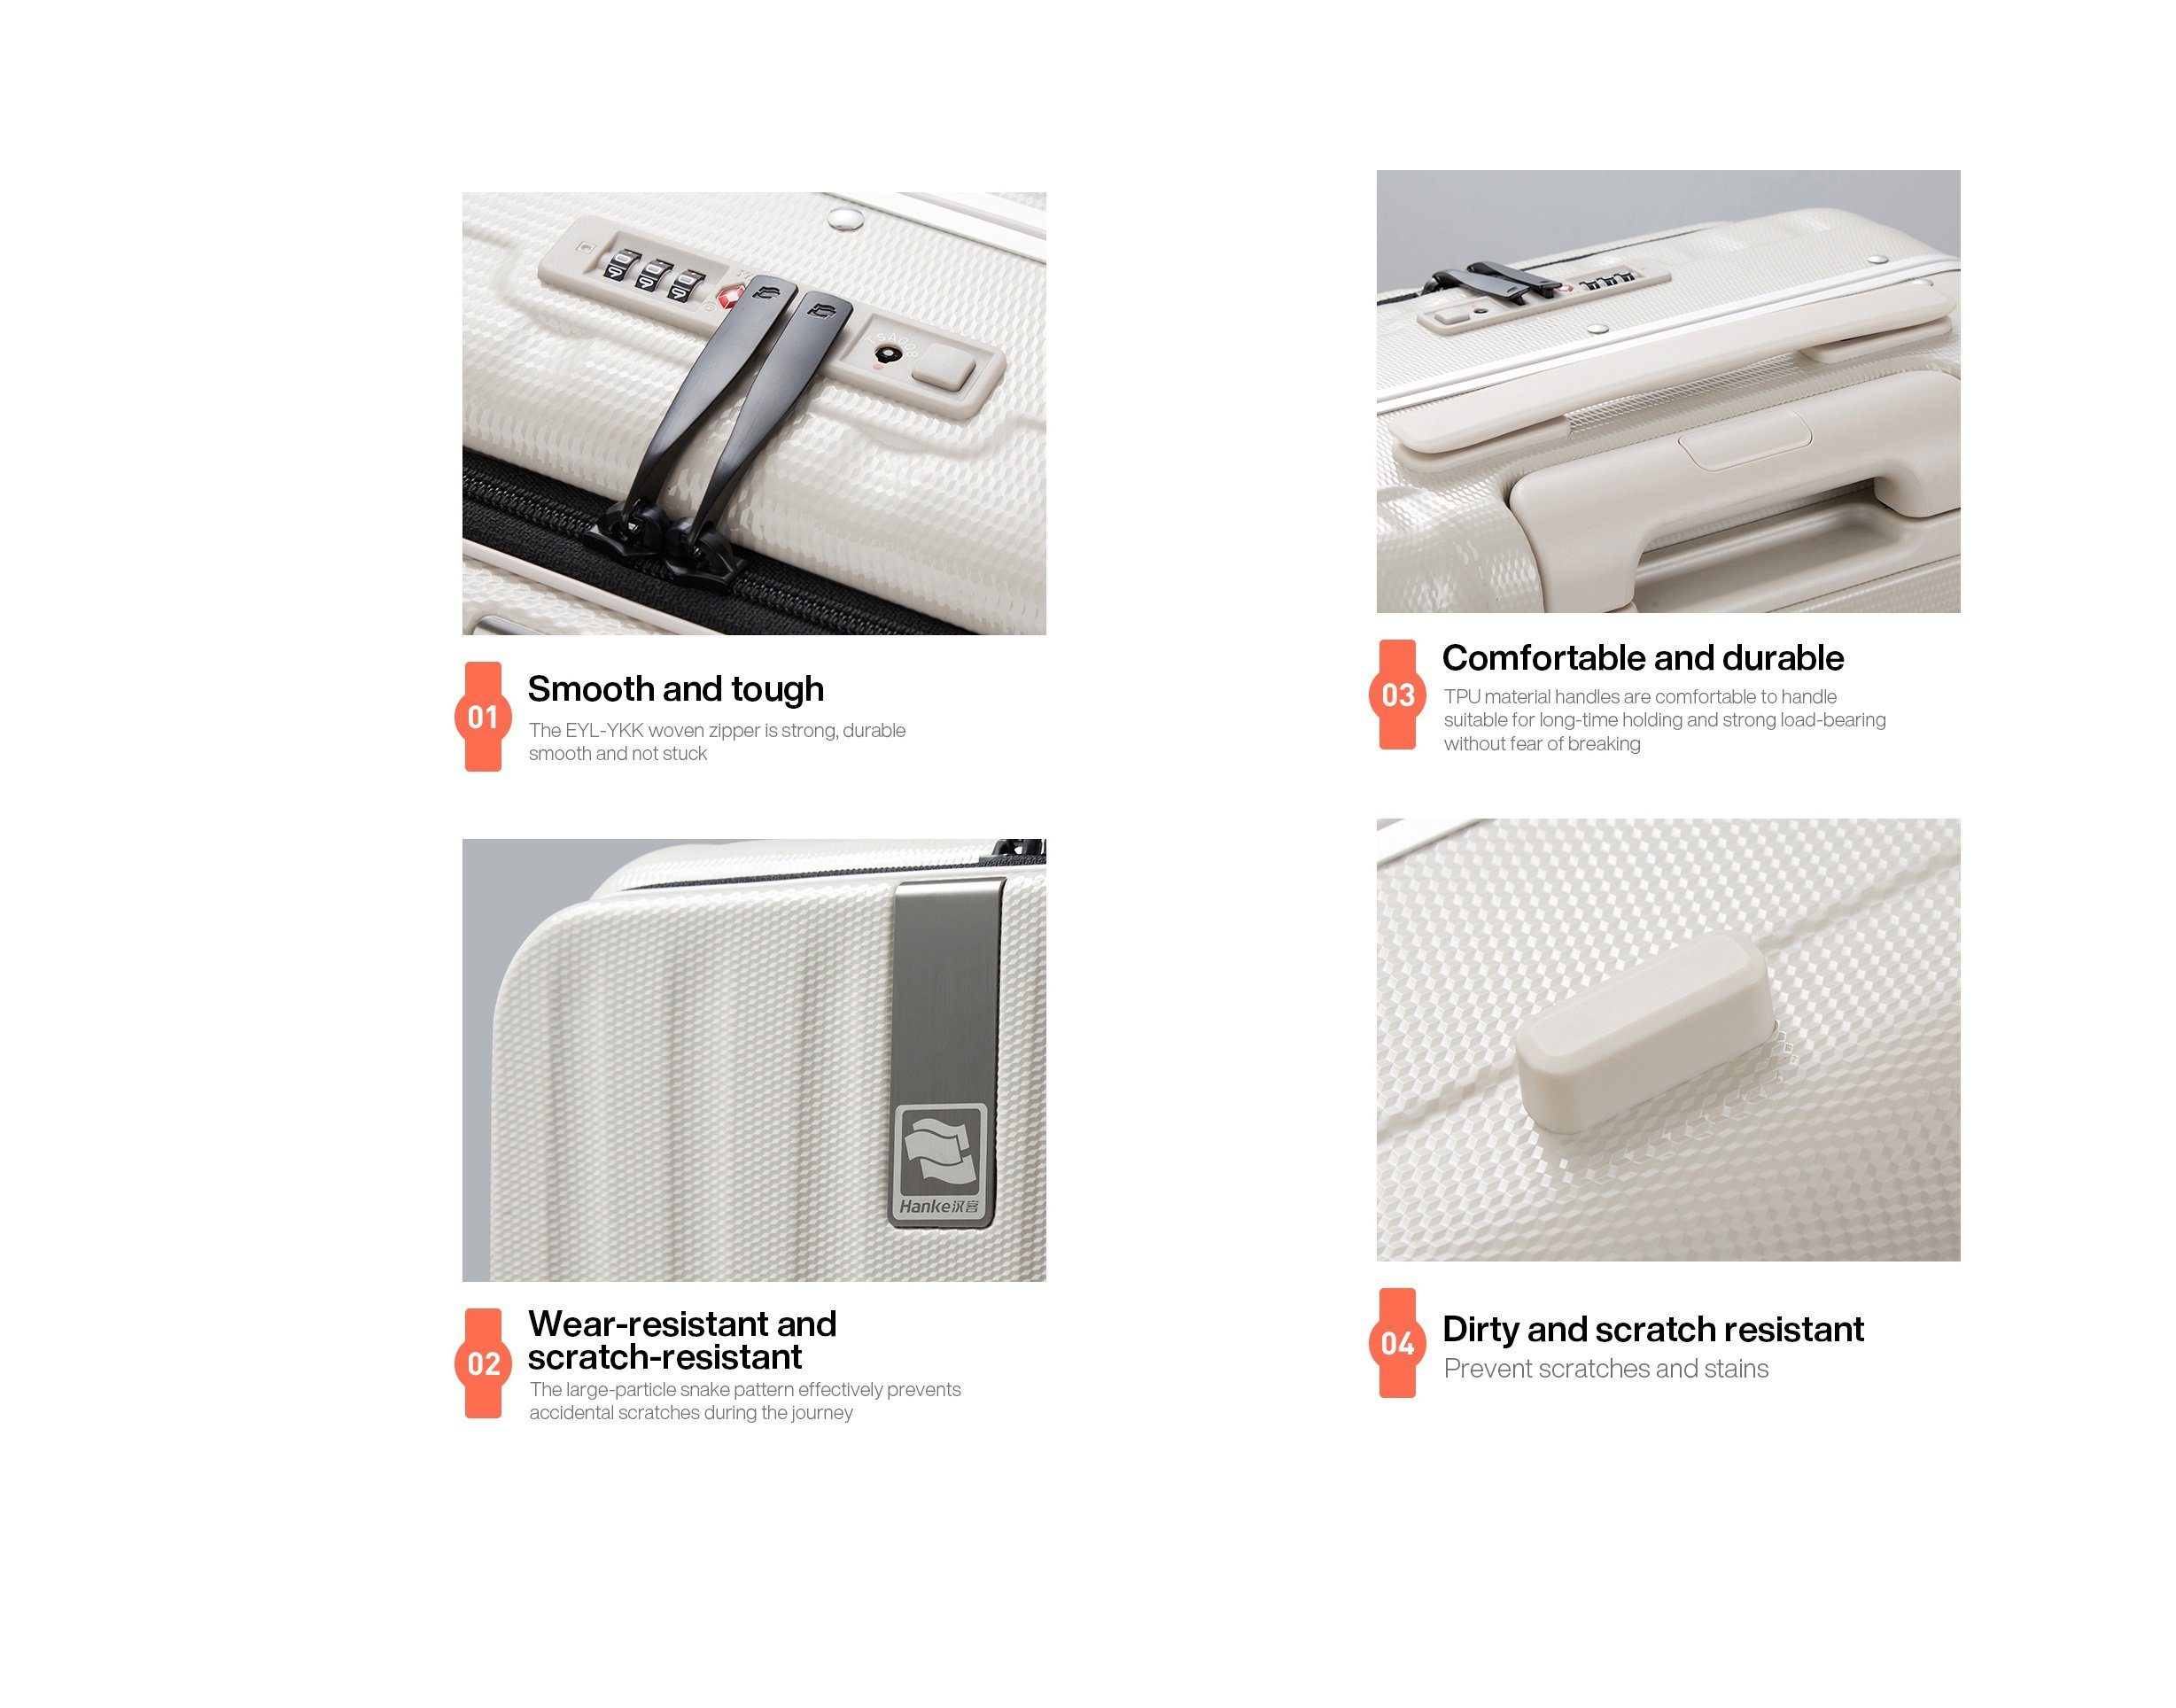 Premium Seitenklappe, grau Handgepäckkoffer mit Polycarbonat, Hartschalen-Trolley TSA Hanke